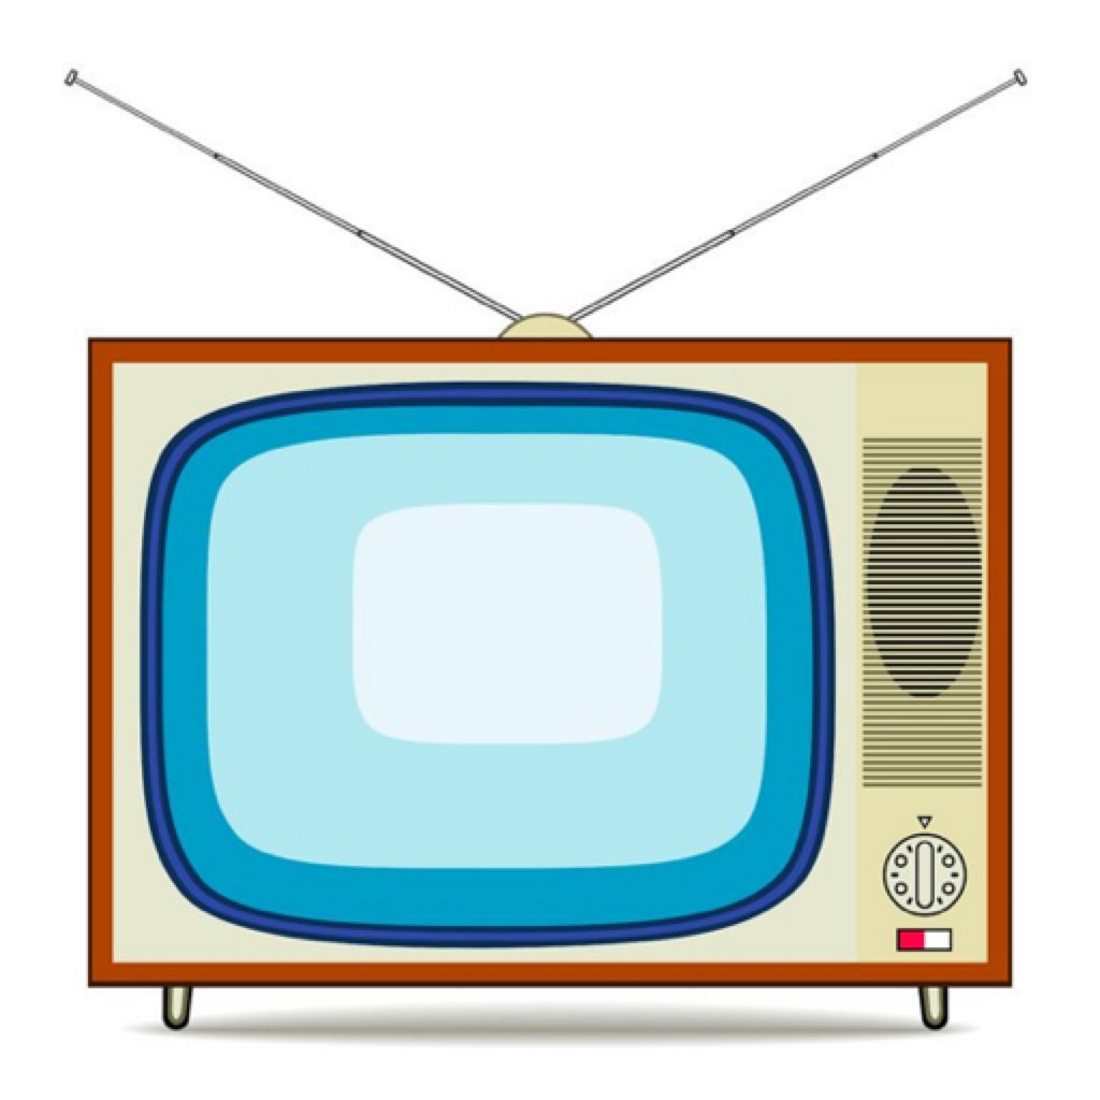 Изображение телевизора красное. Телевизор мультяшный. Телевизор иллюстрация. Телевизор рисунок. Телевизор для дошкольников.